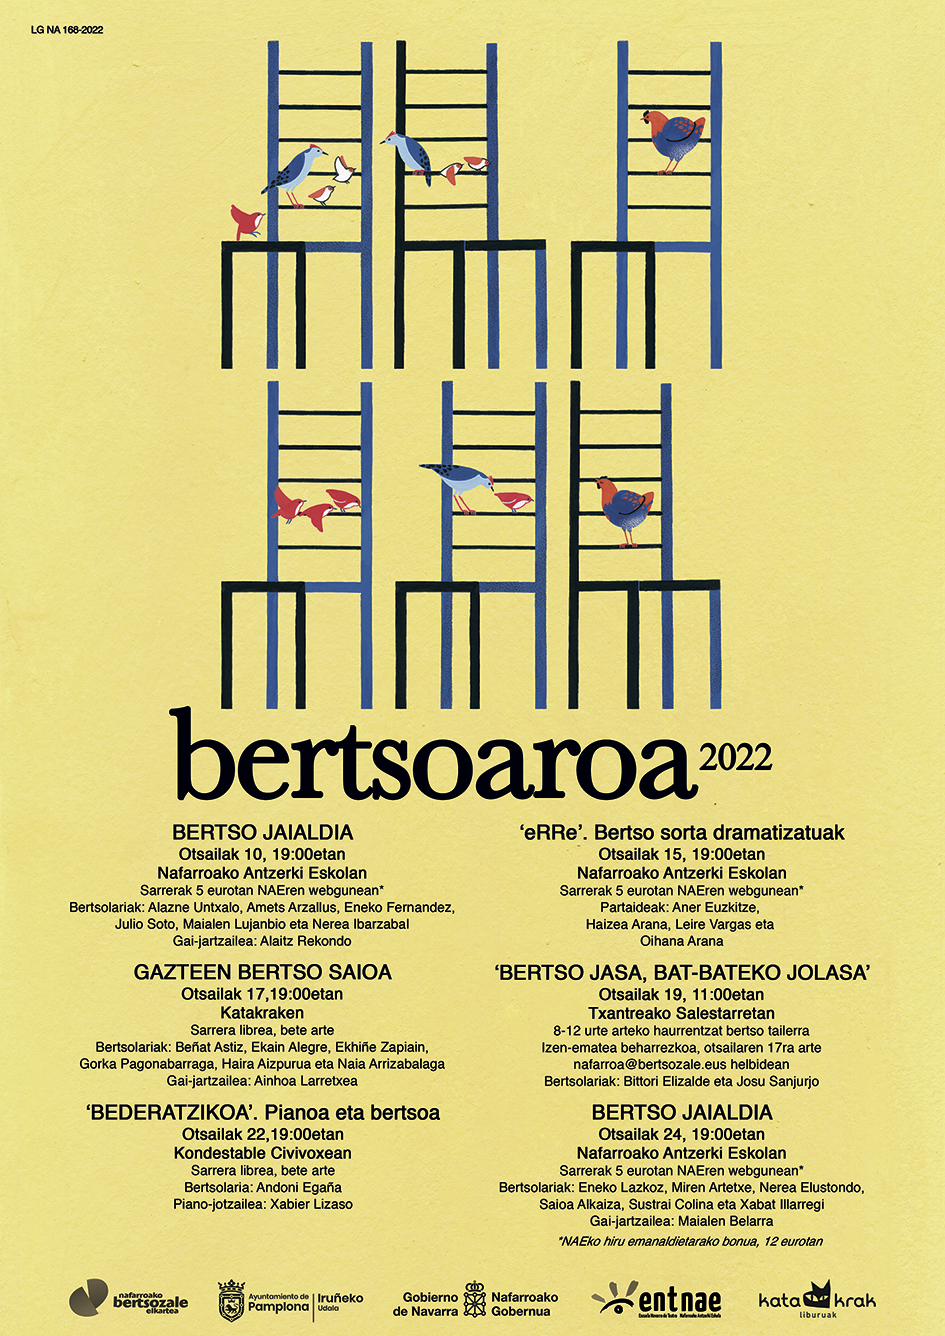 BERTSOAROA 2022. Kartela euskaraz